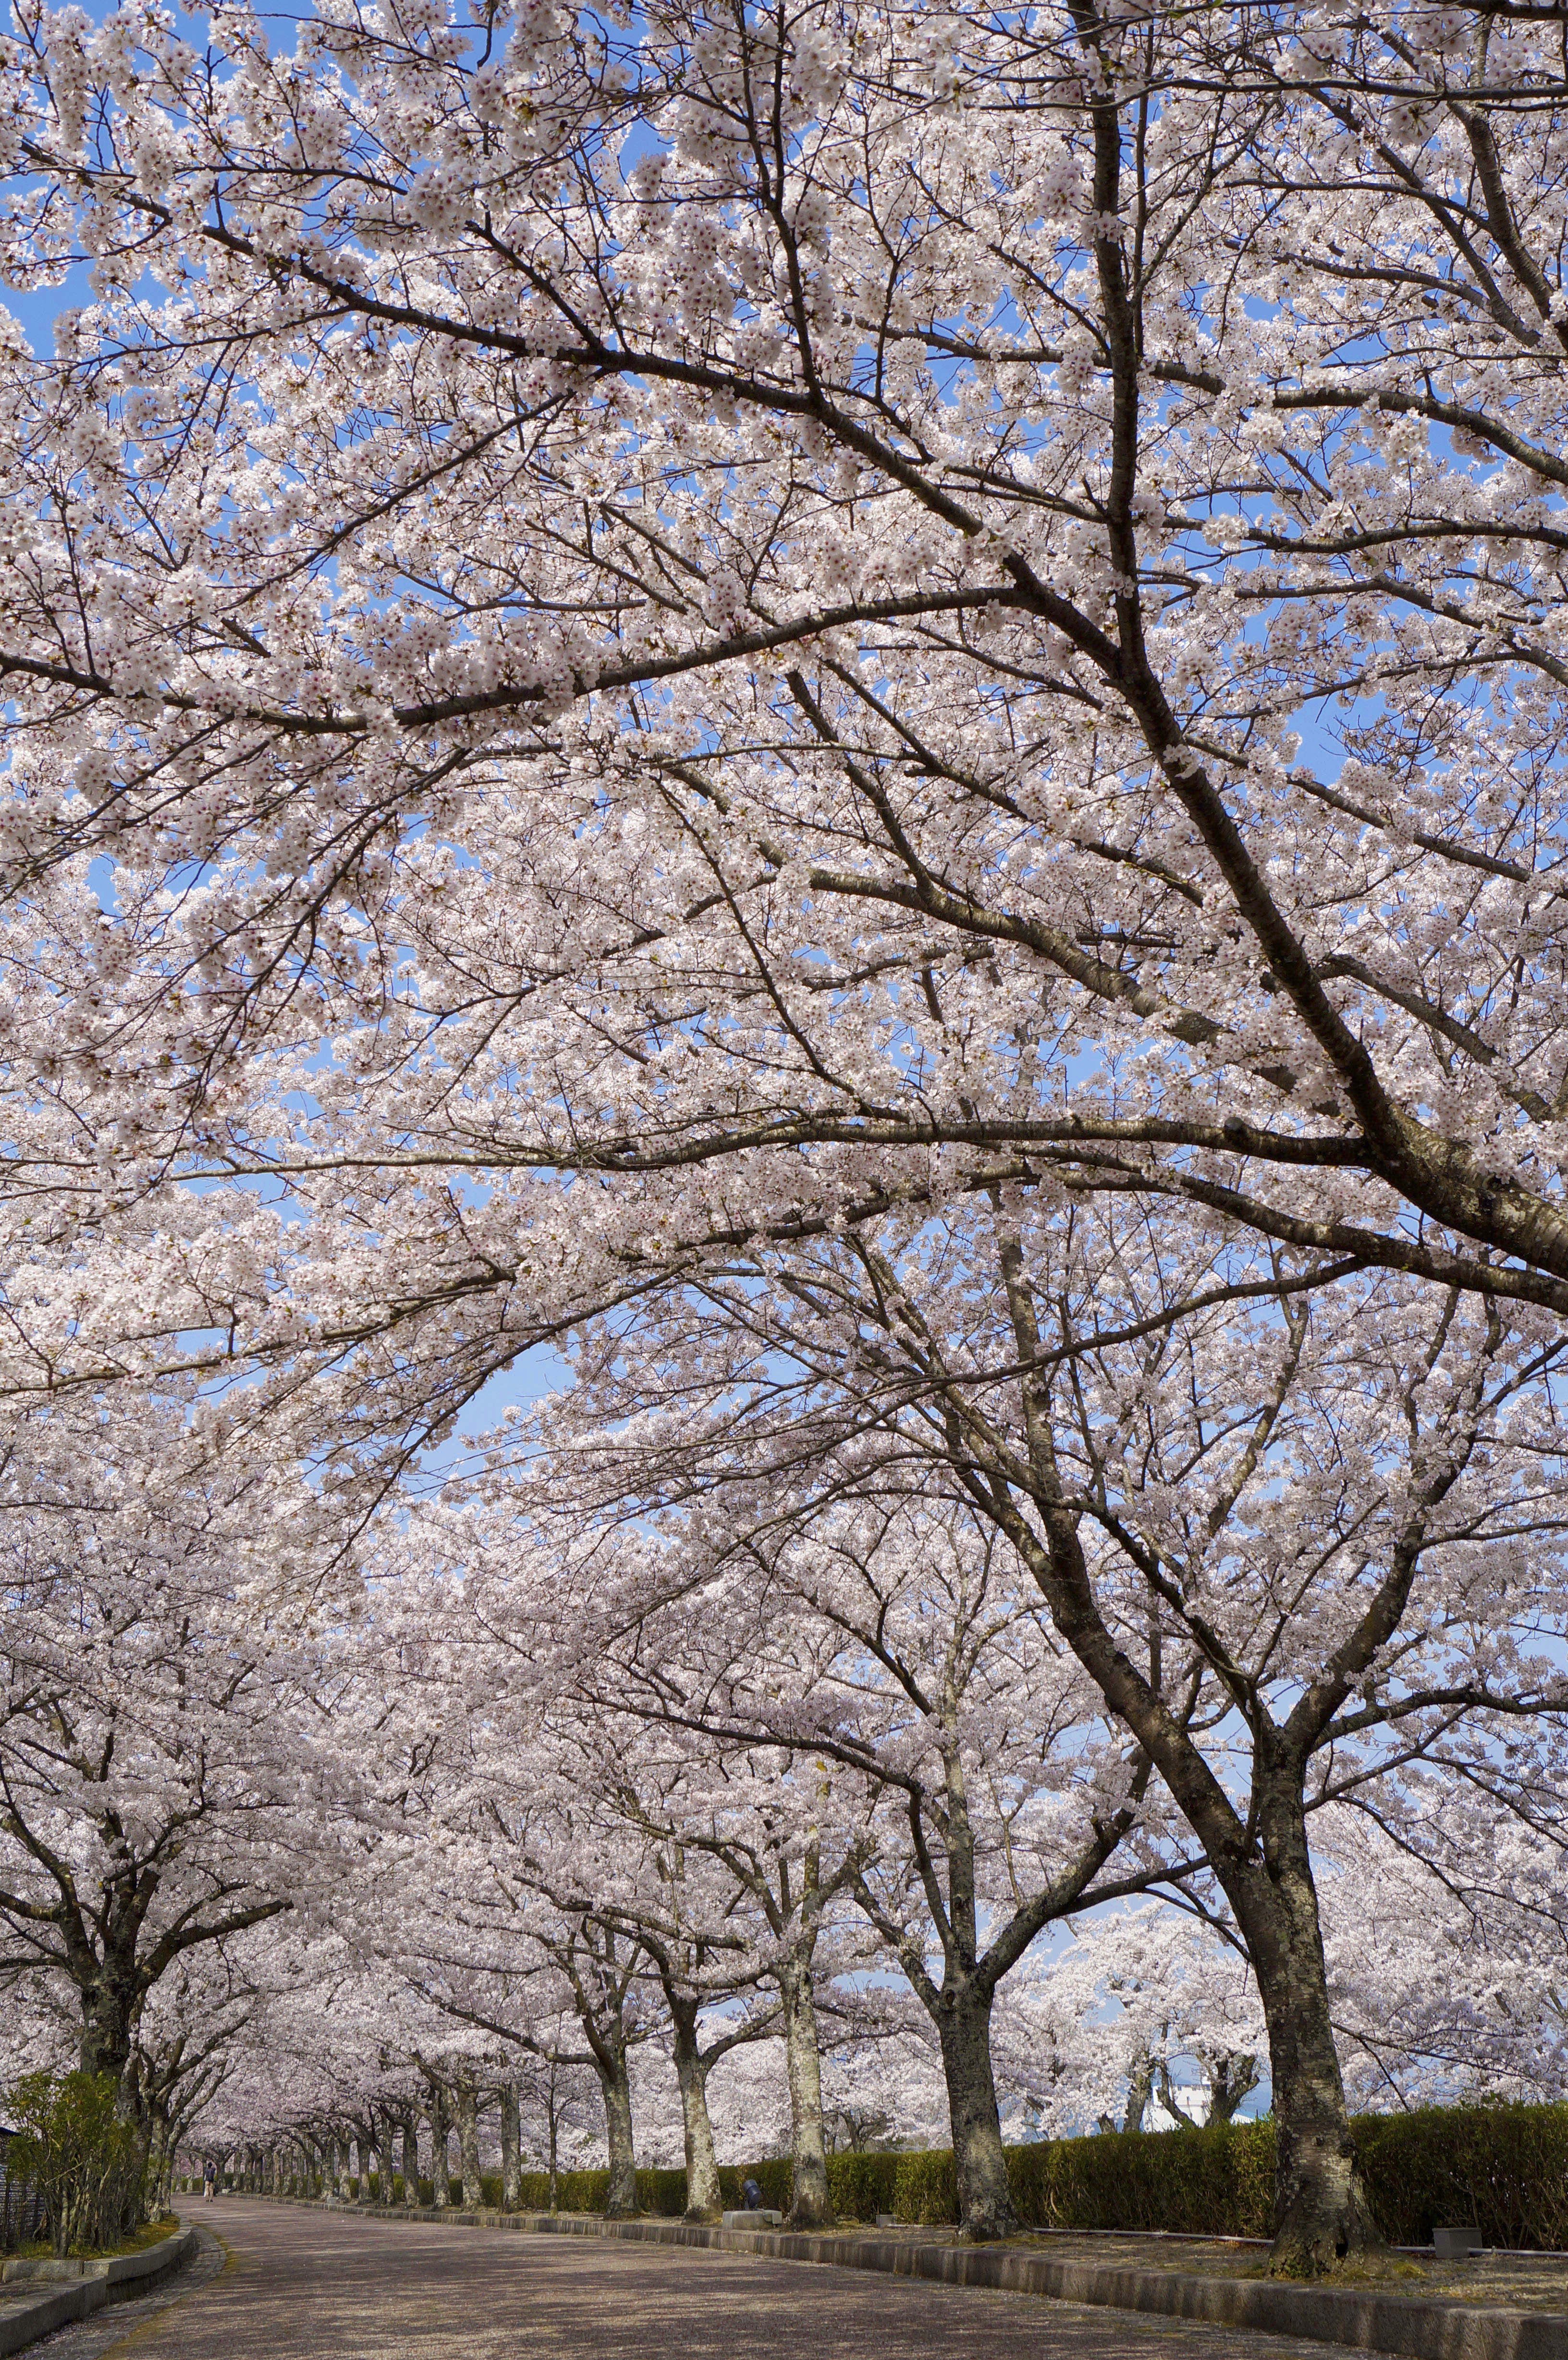 京都 亀岡 和らぎの道 桜並木